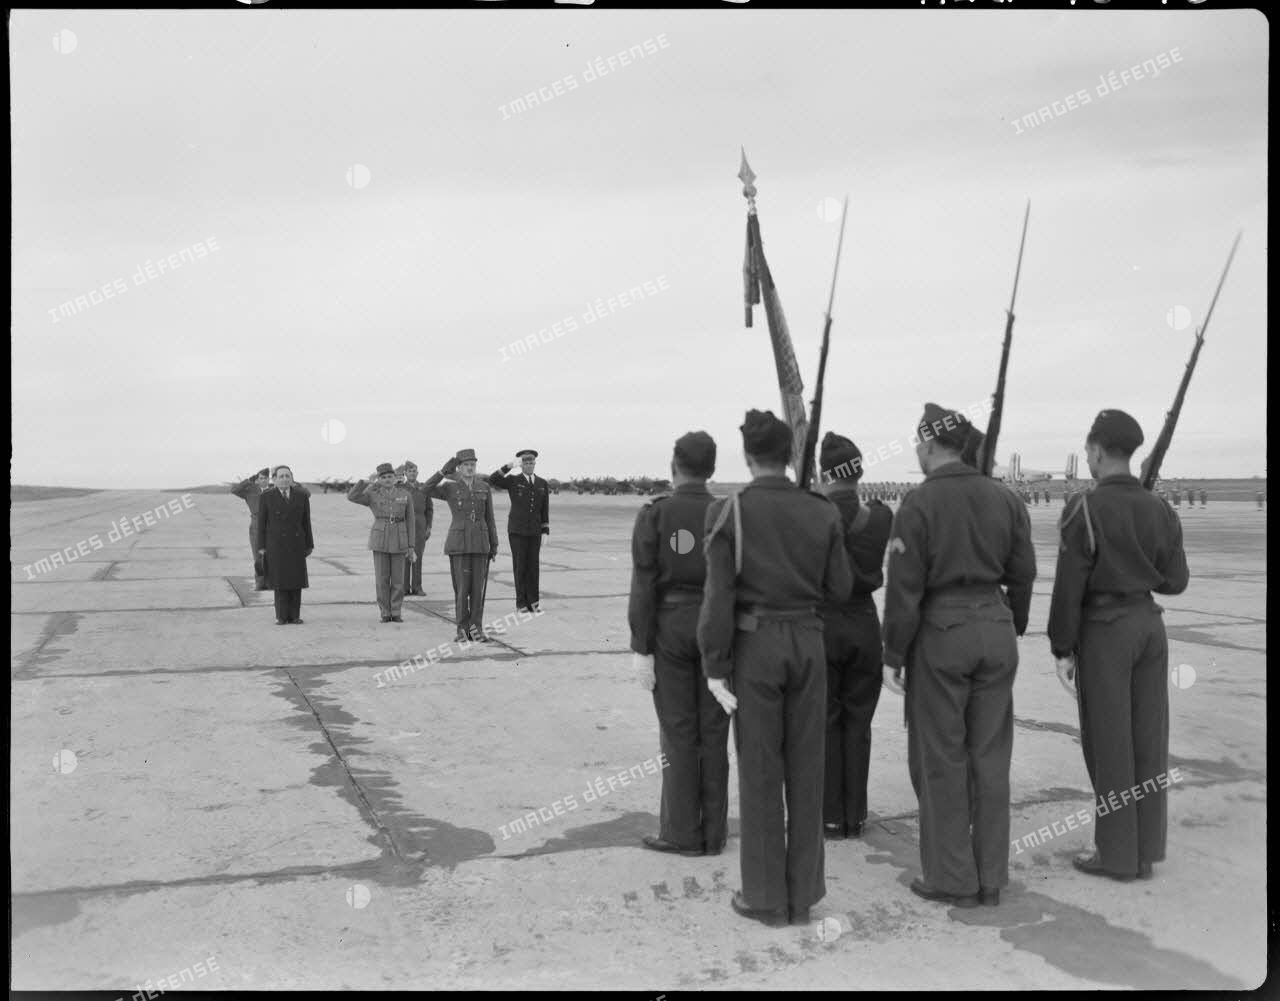 Le général Philippe Leclerc assiste à une cérémonie militaire, sur un aérodrome.